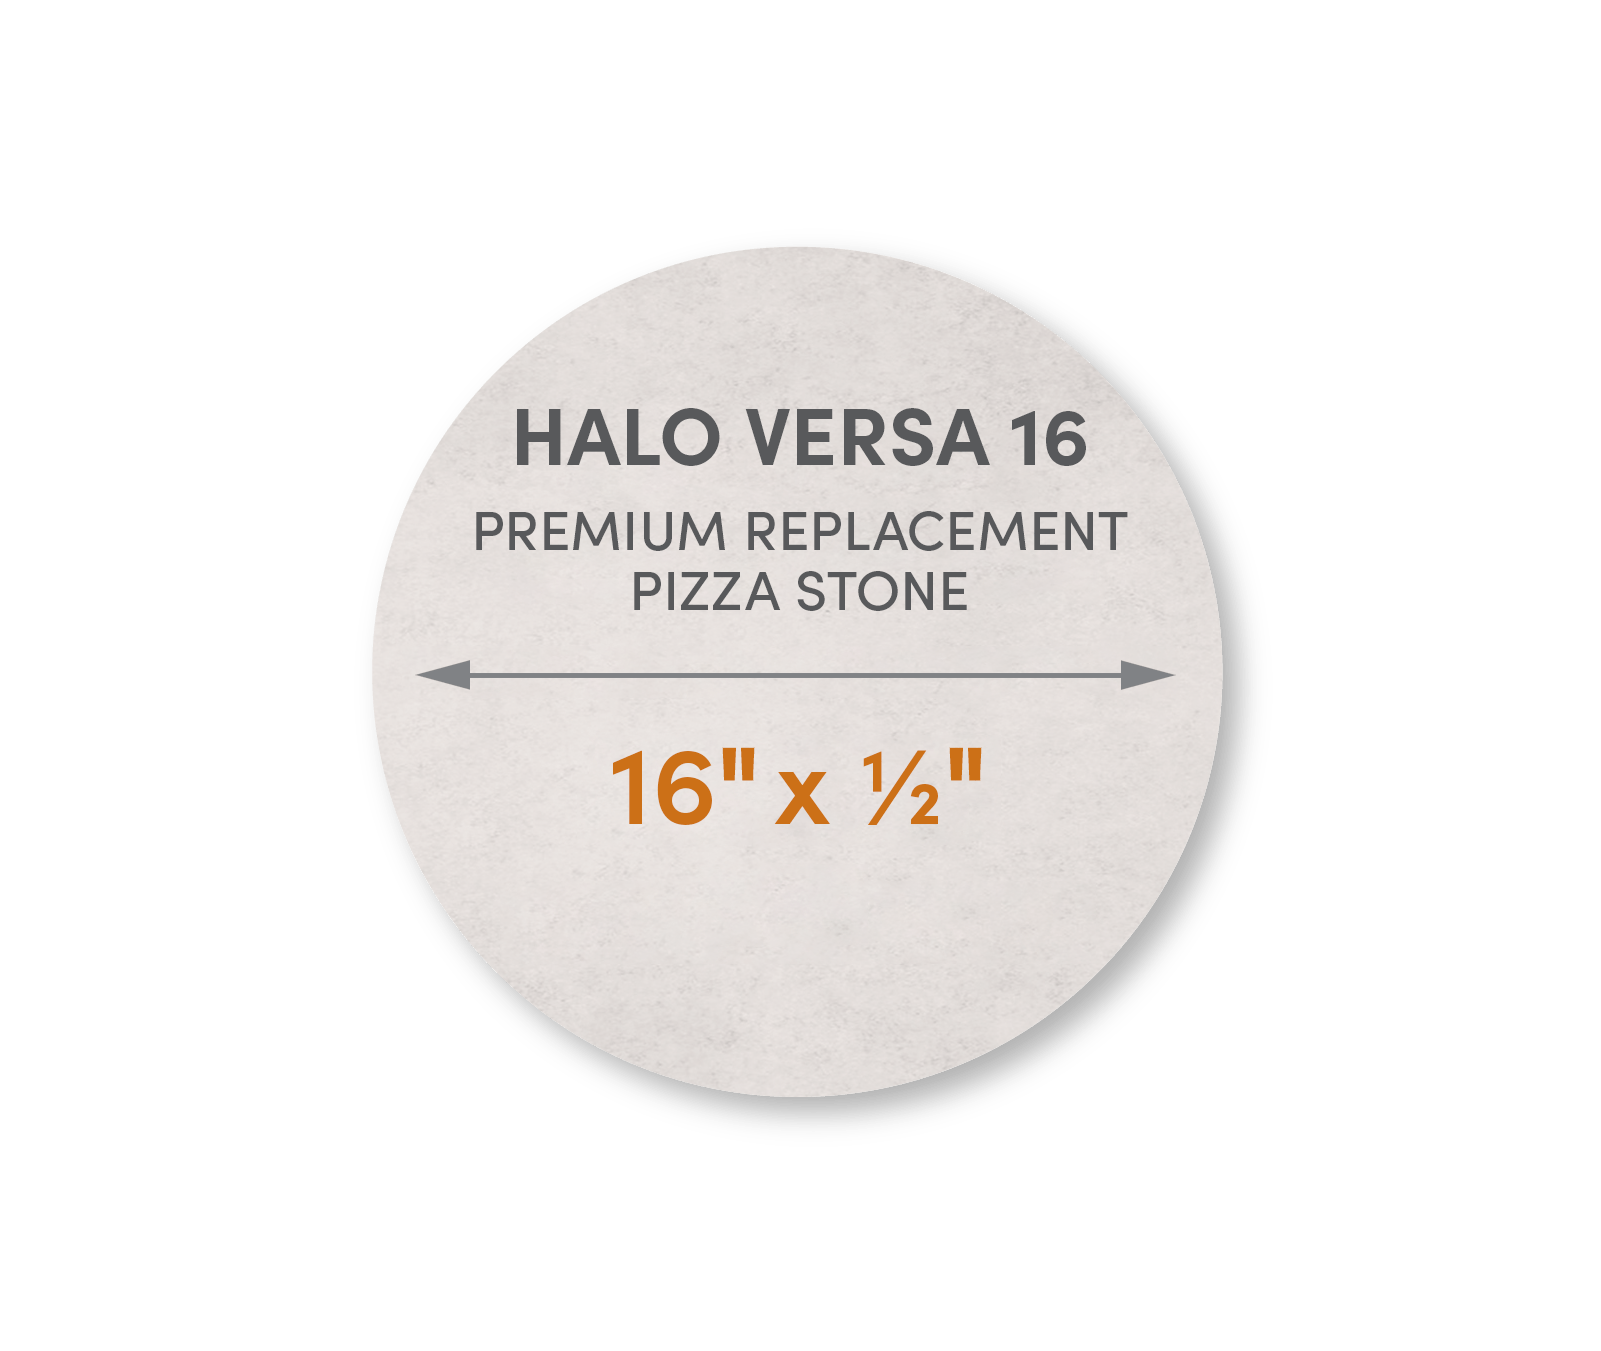 Halo Versa 16 - Premium Replacement Pizza Stone - FibraMent